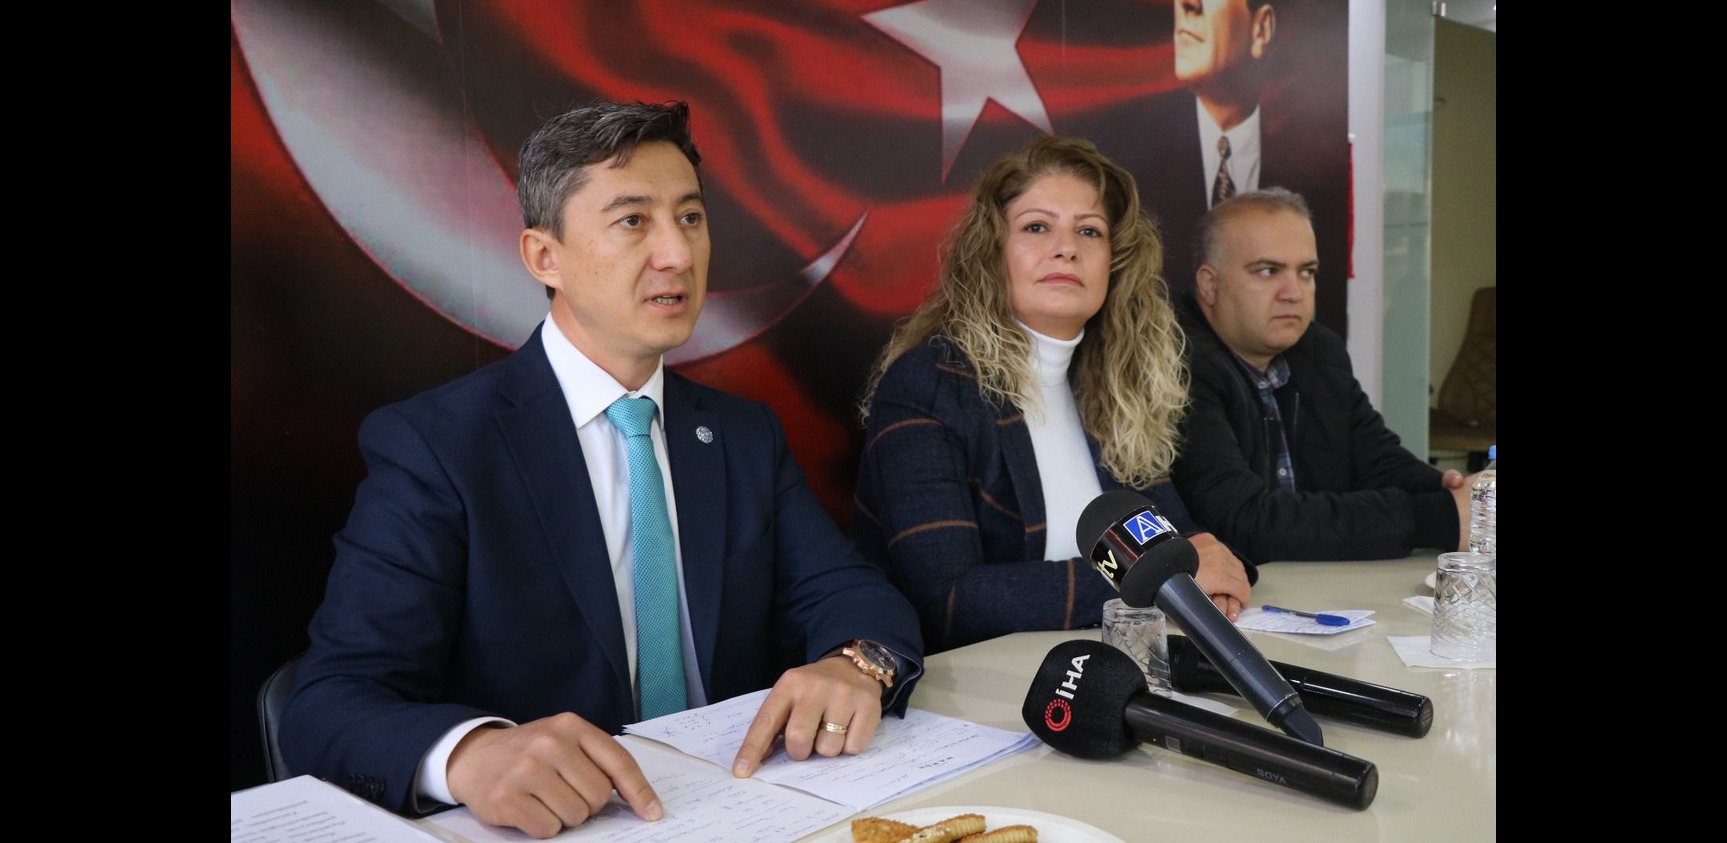 Genel Başkan Yardımcımız Mustafa Çağlayan:" Seçmen ve Sandık Güvenliği!"